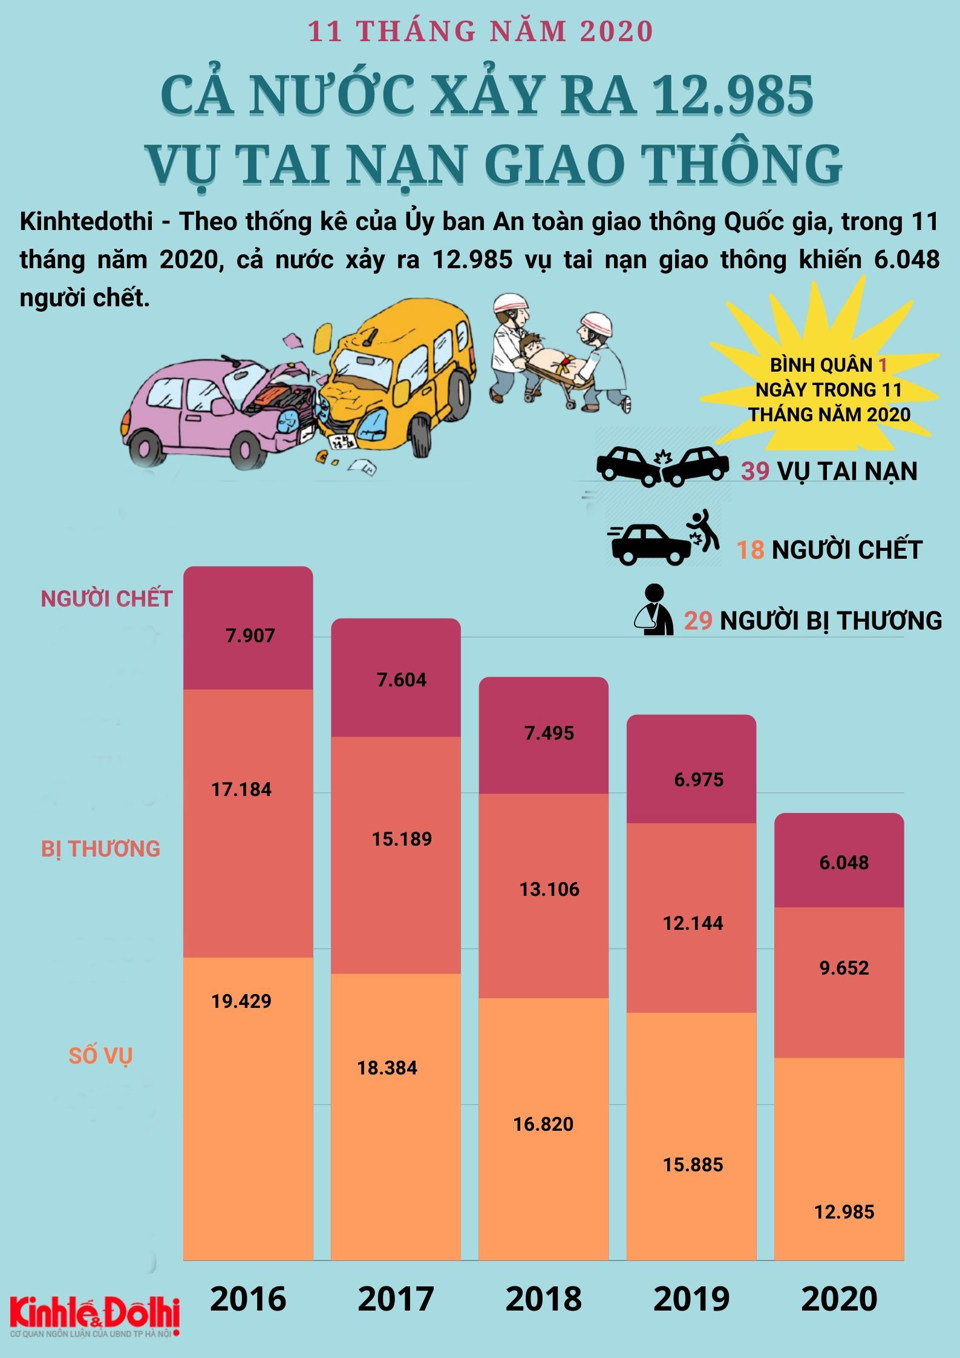 [Infographic] Tình hình tai nạn giao thông 11 tháng năm 2020 - Ảnh 1